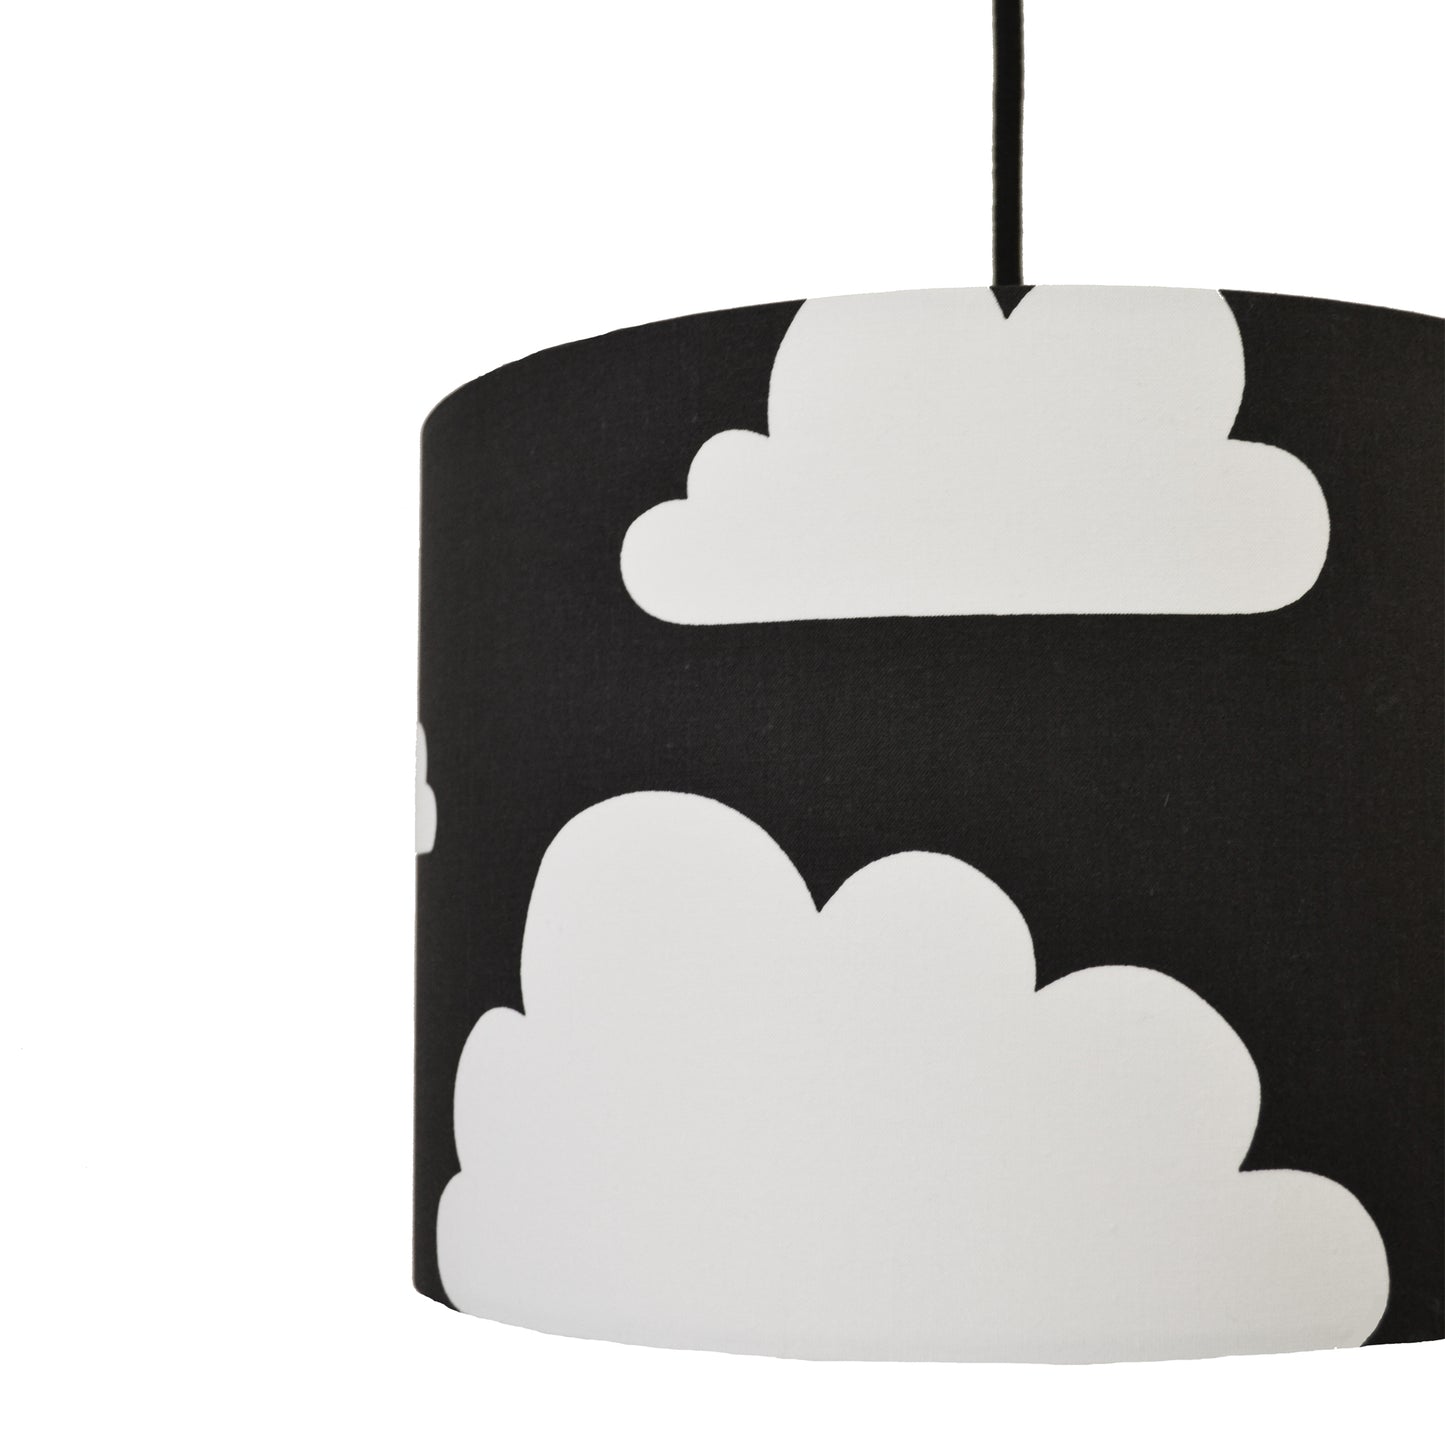 Cloud Lamp shade - Black